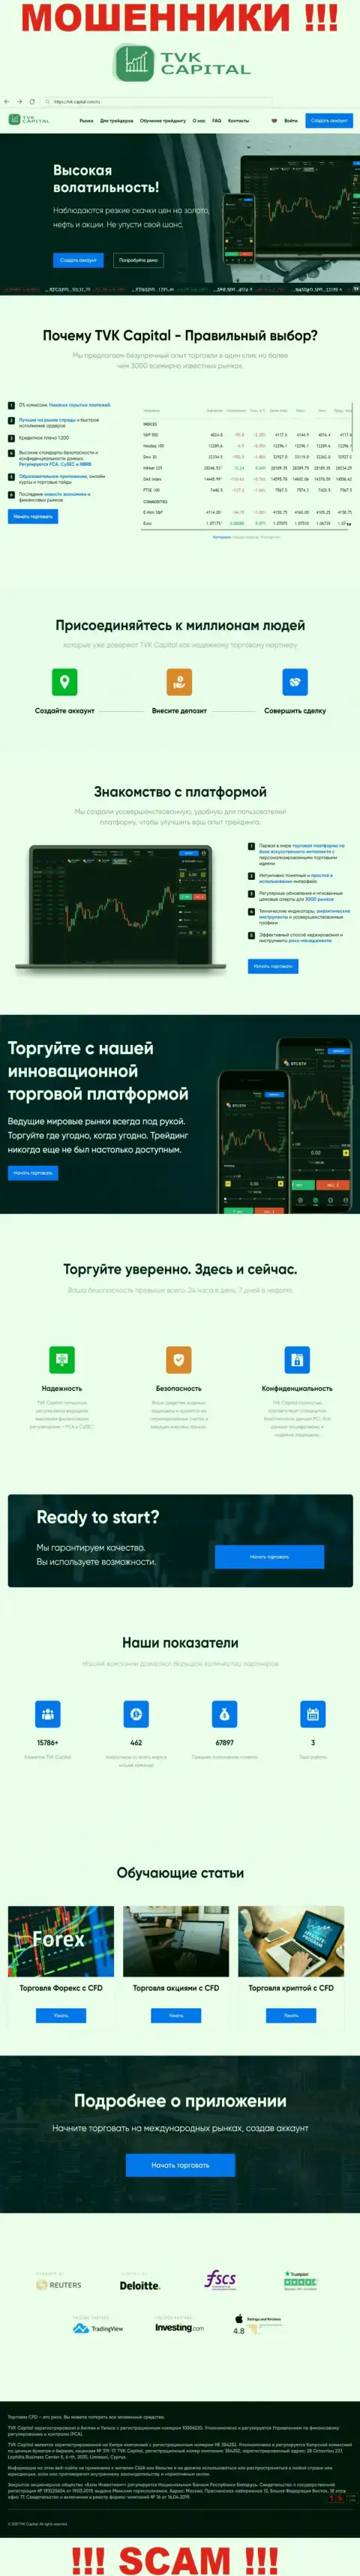 TVKCapital Com - сайт организации TVK Capital, обычная страница разводил